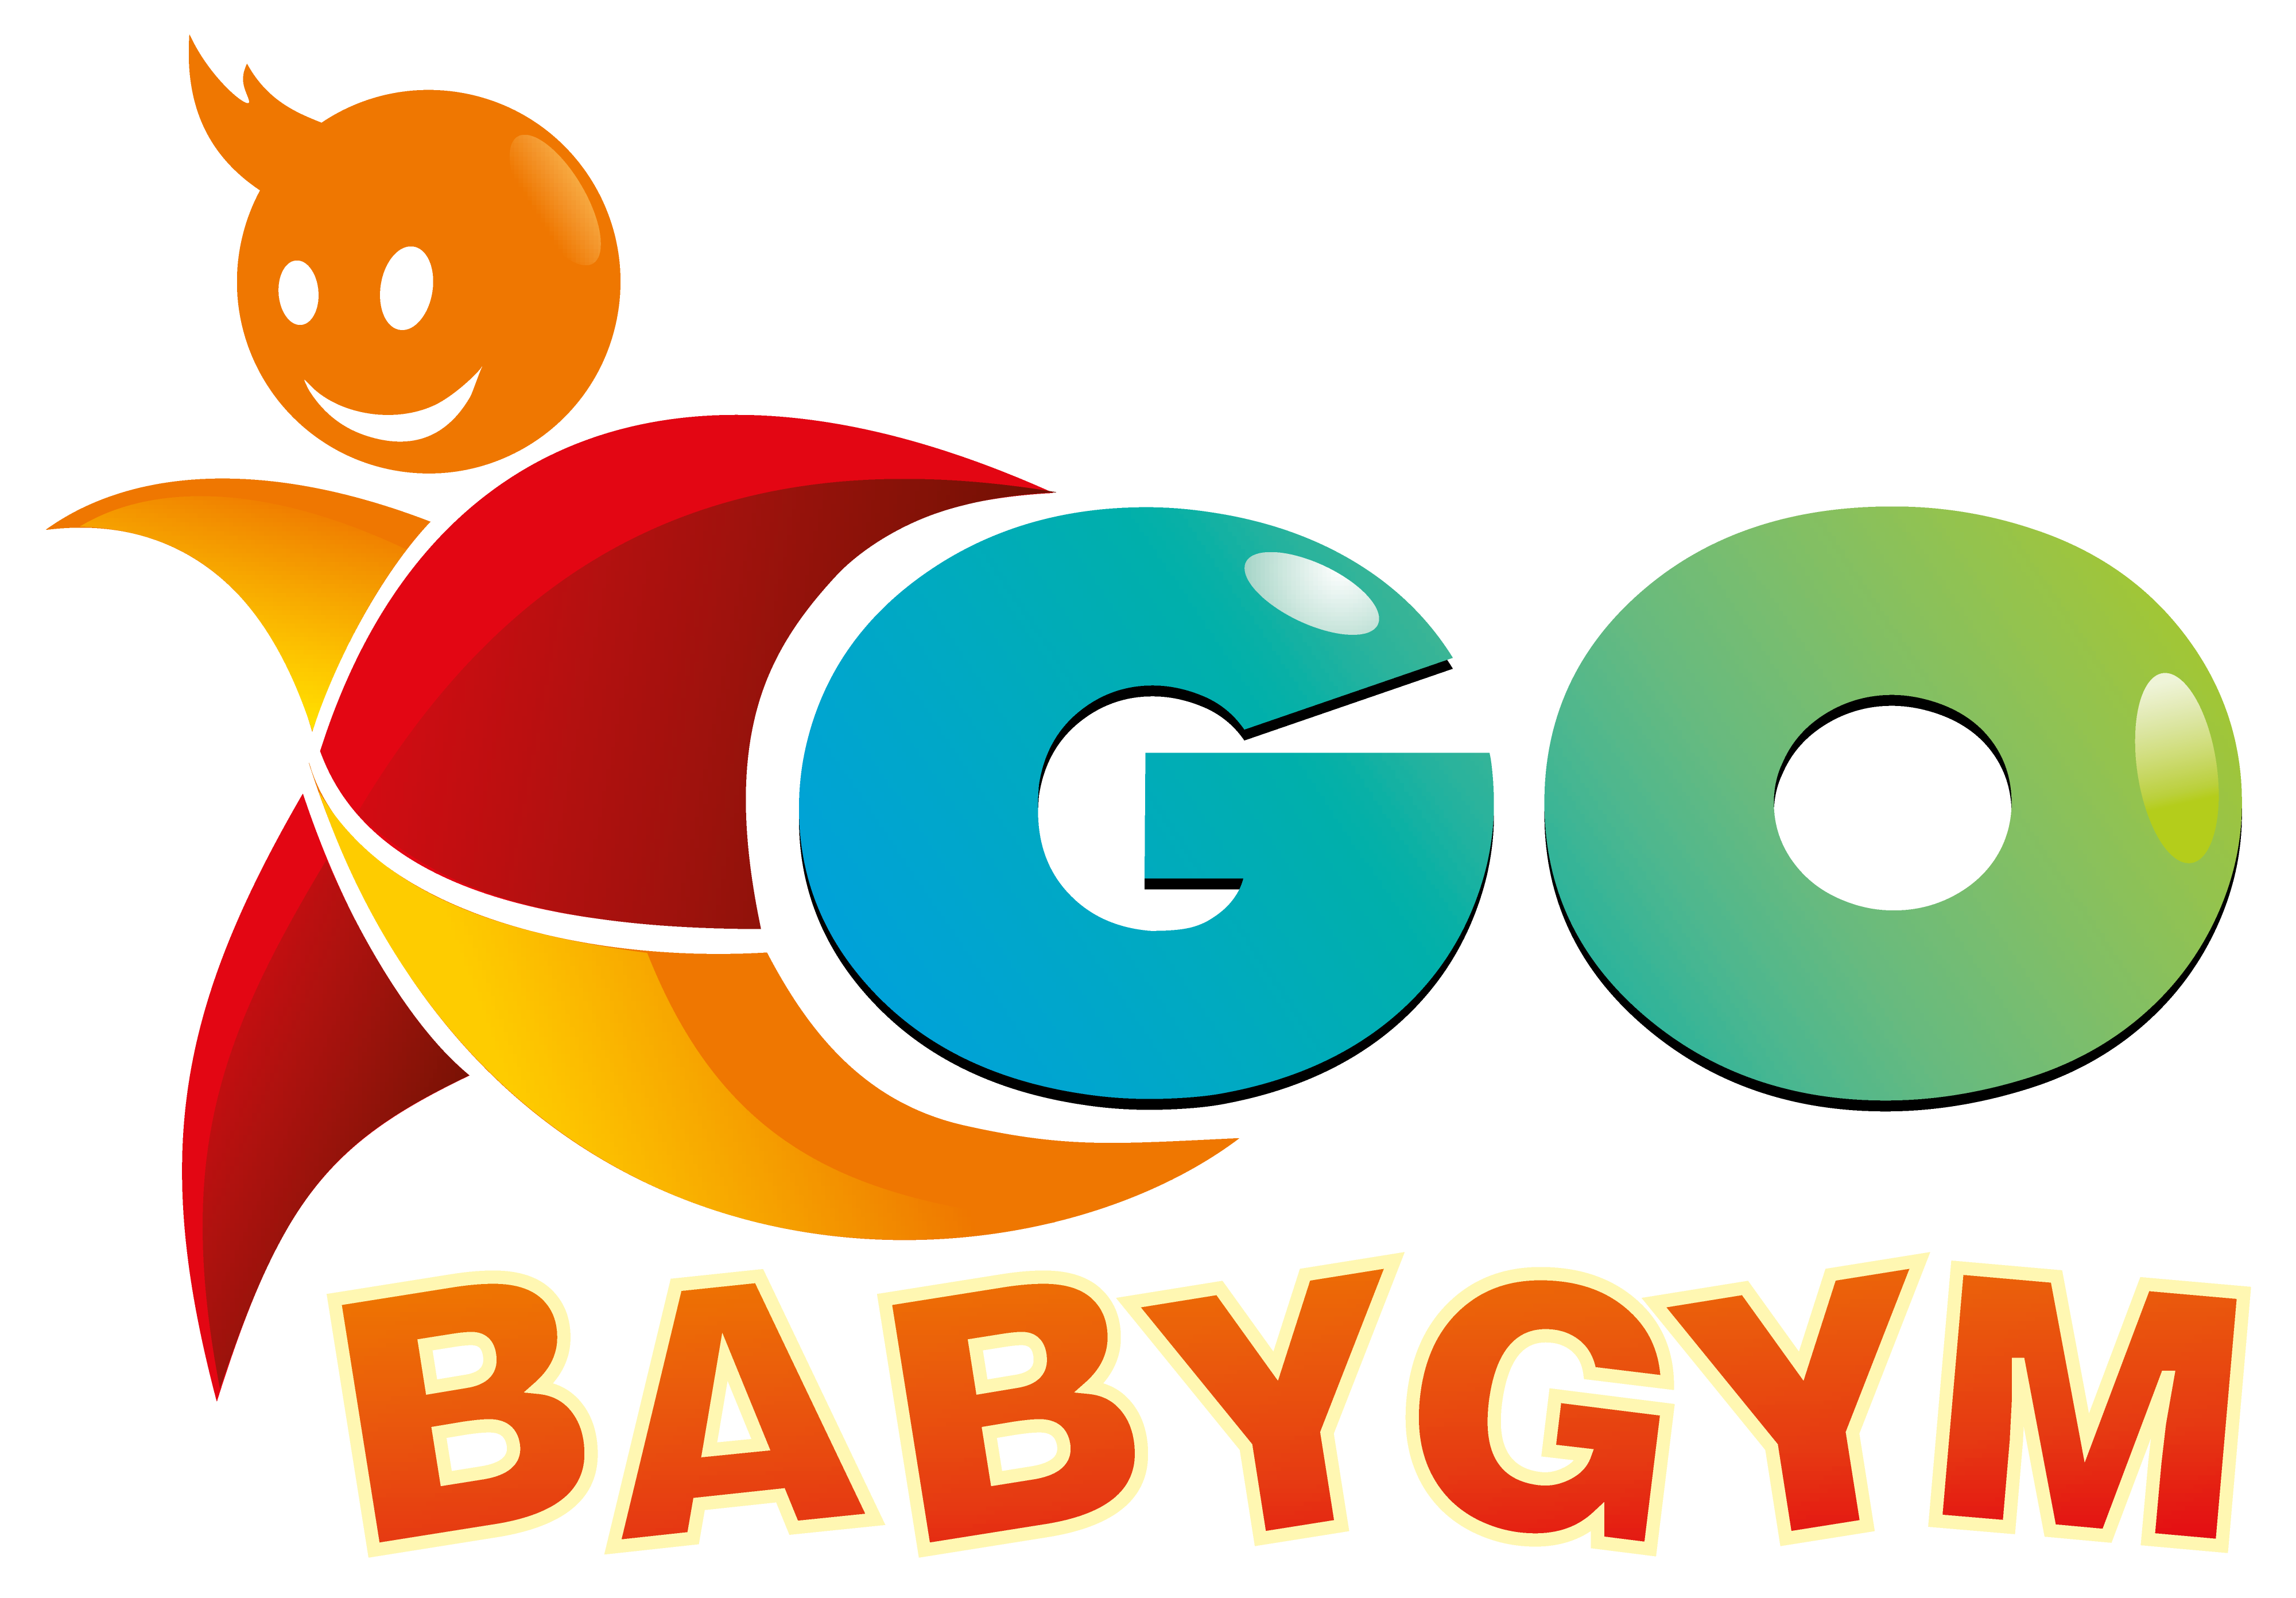 GoBabyGym